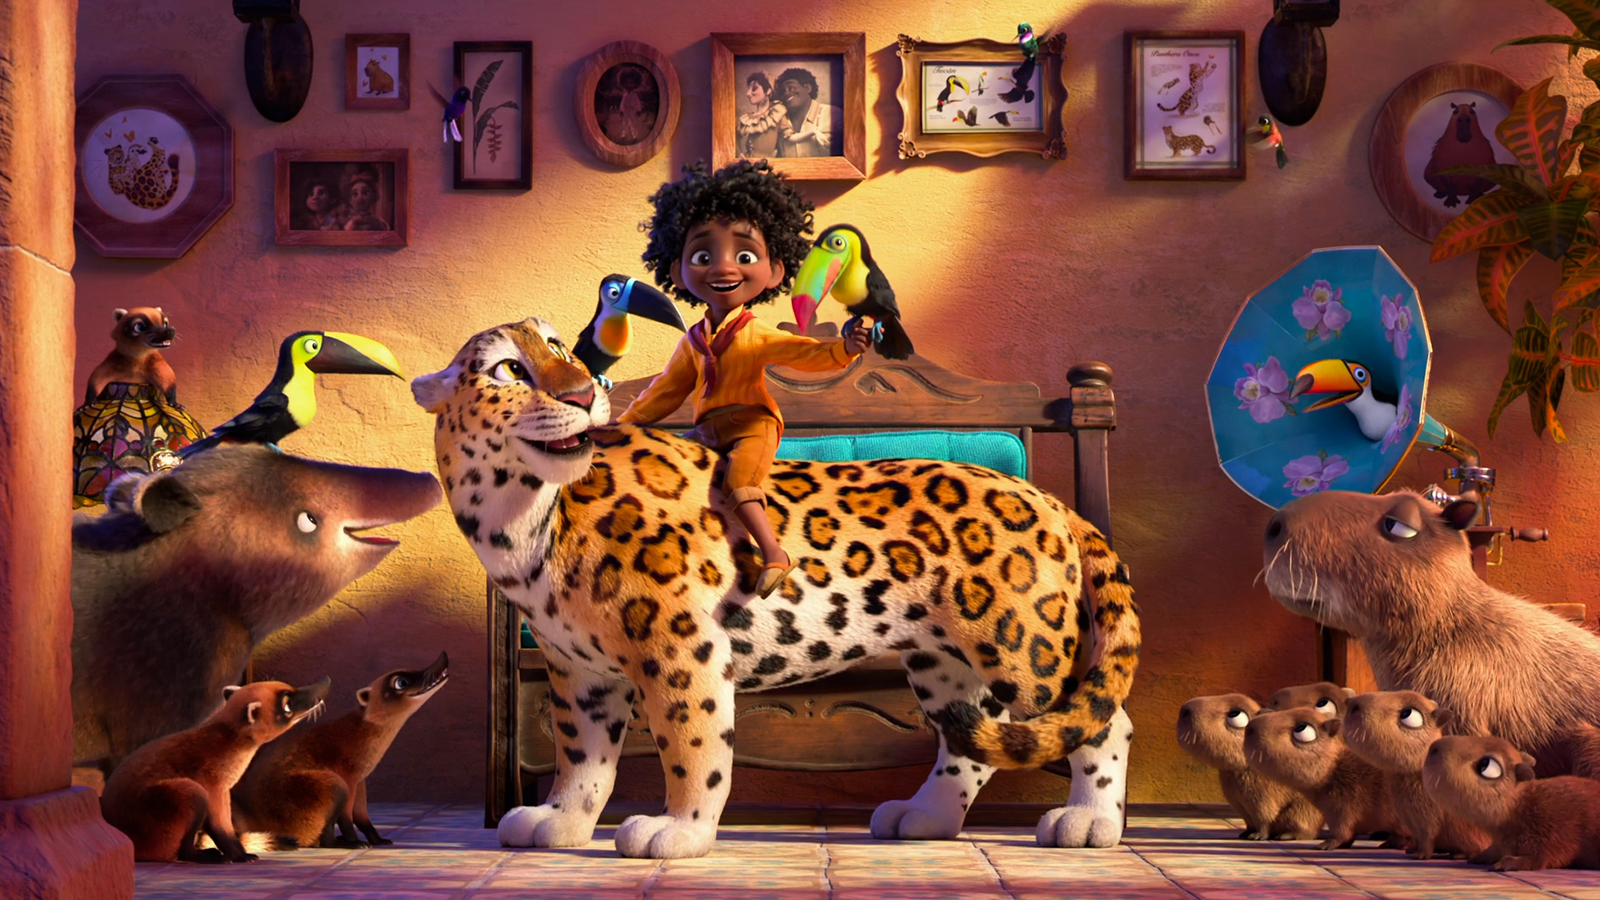 Disney publica tráiler de Encanto, la película inspirada en Colombia